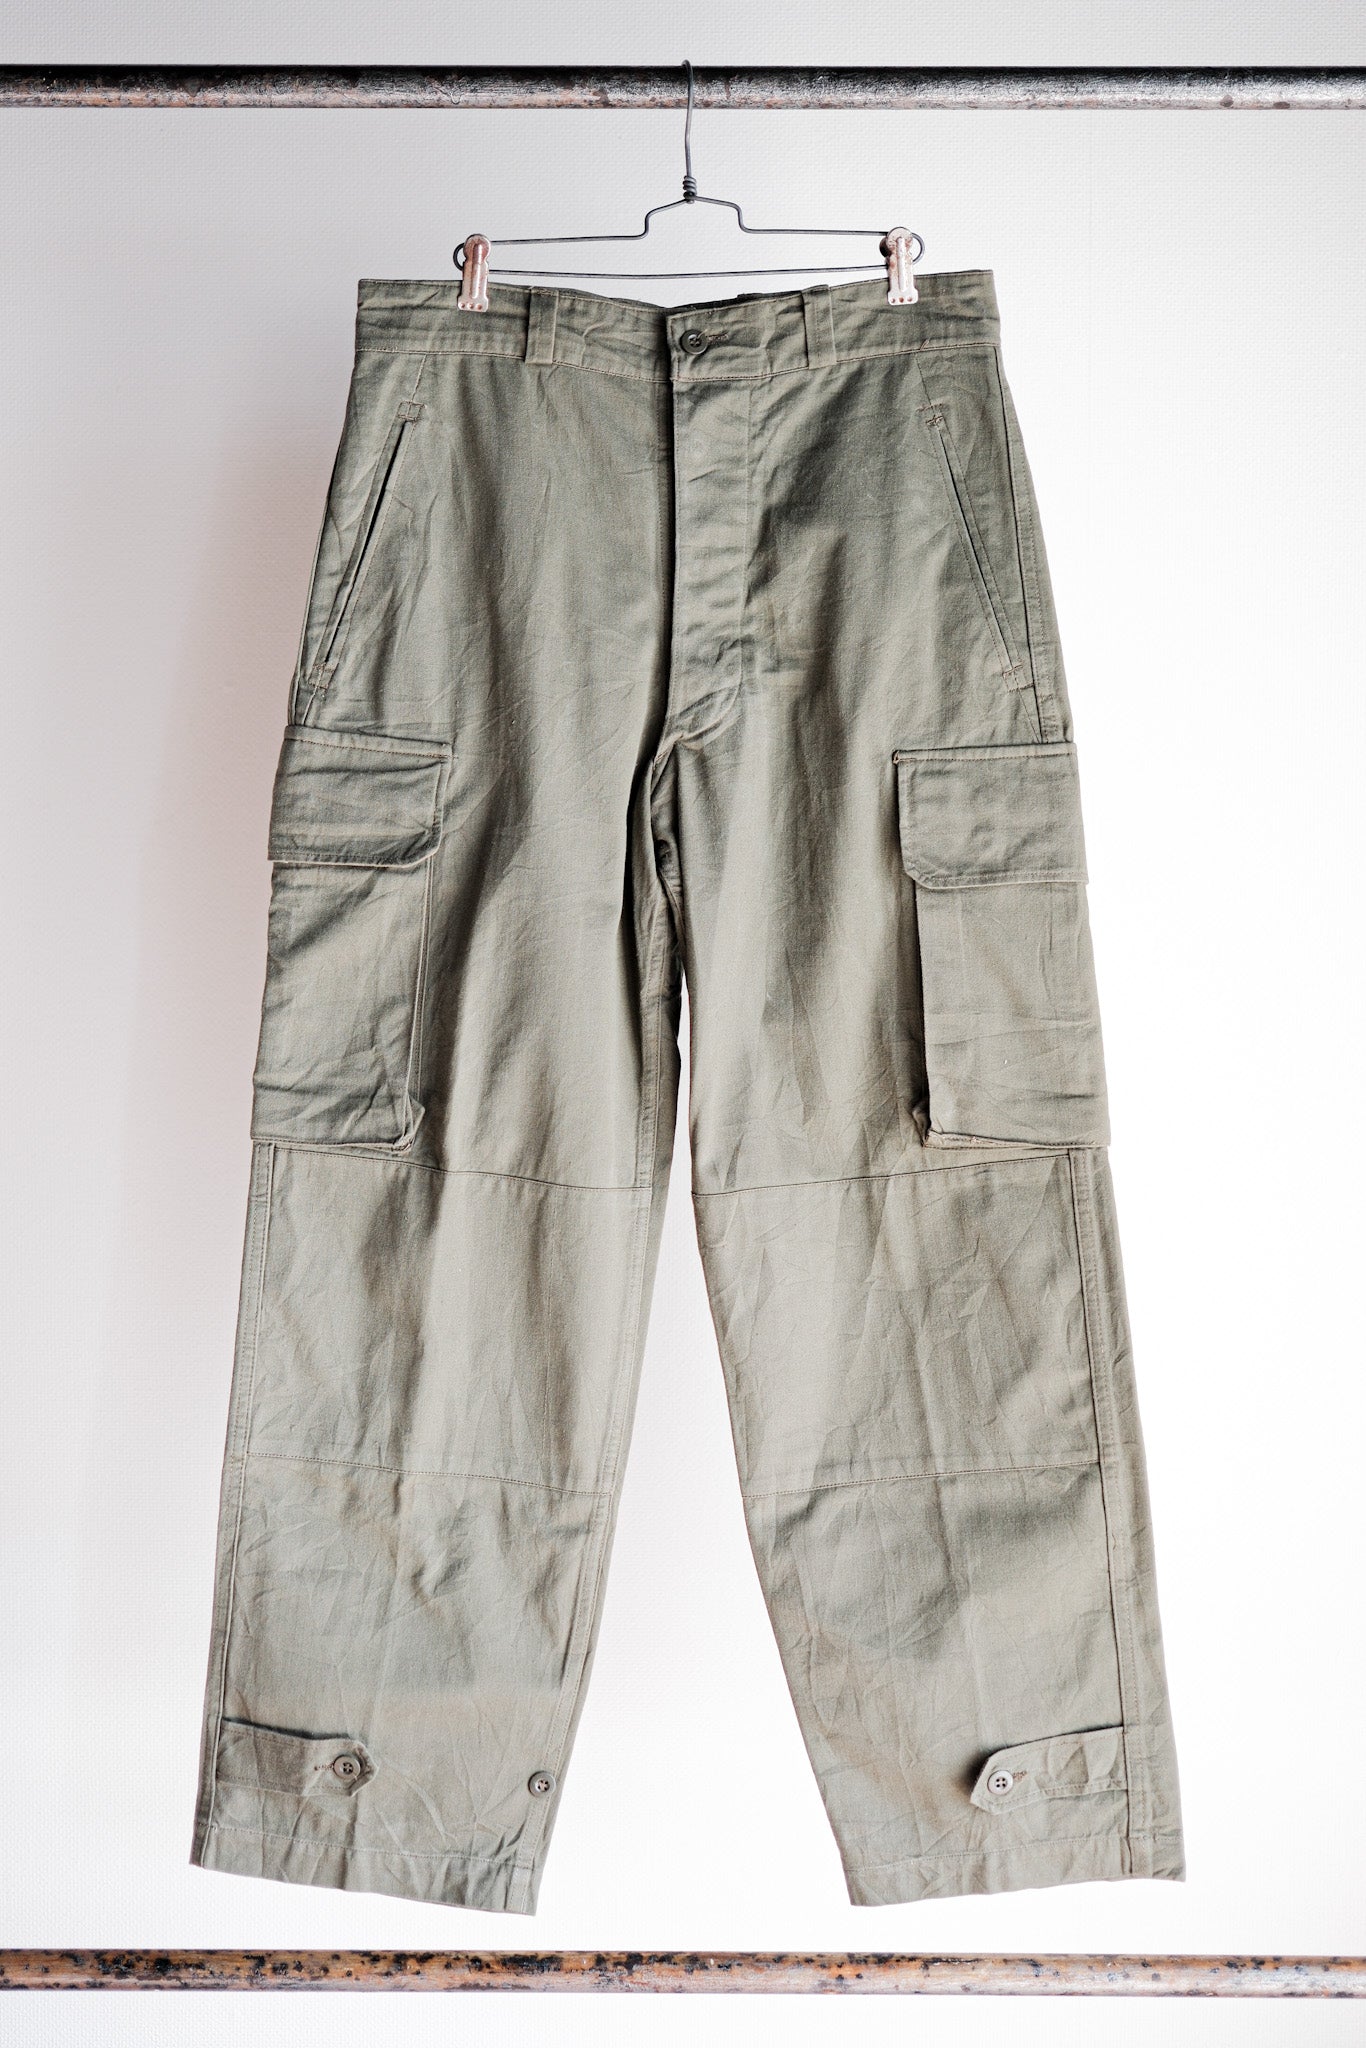 [~ 60's] Taille des pantalons de terrain de l'armée française M47.23